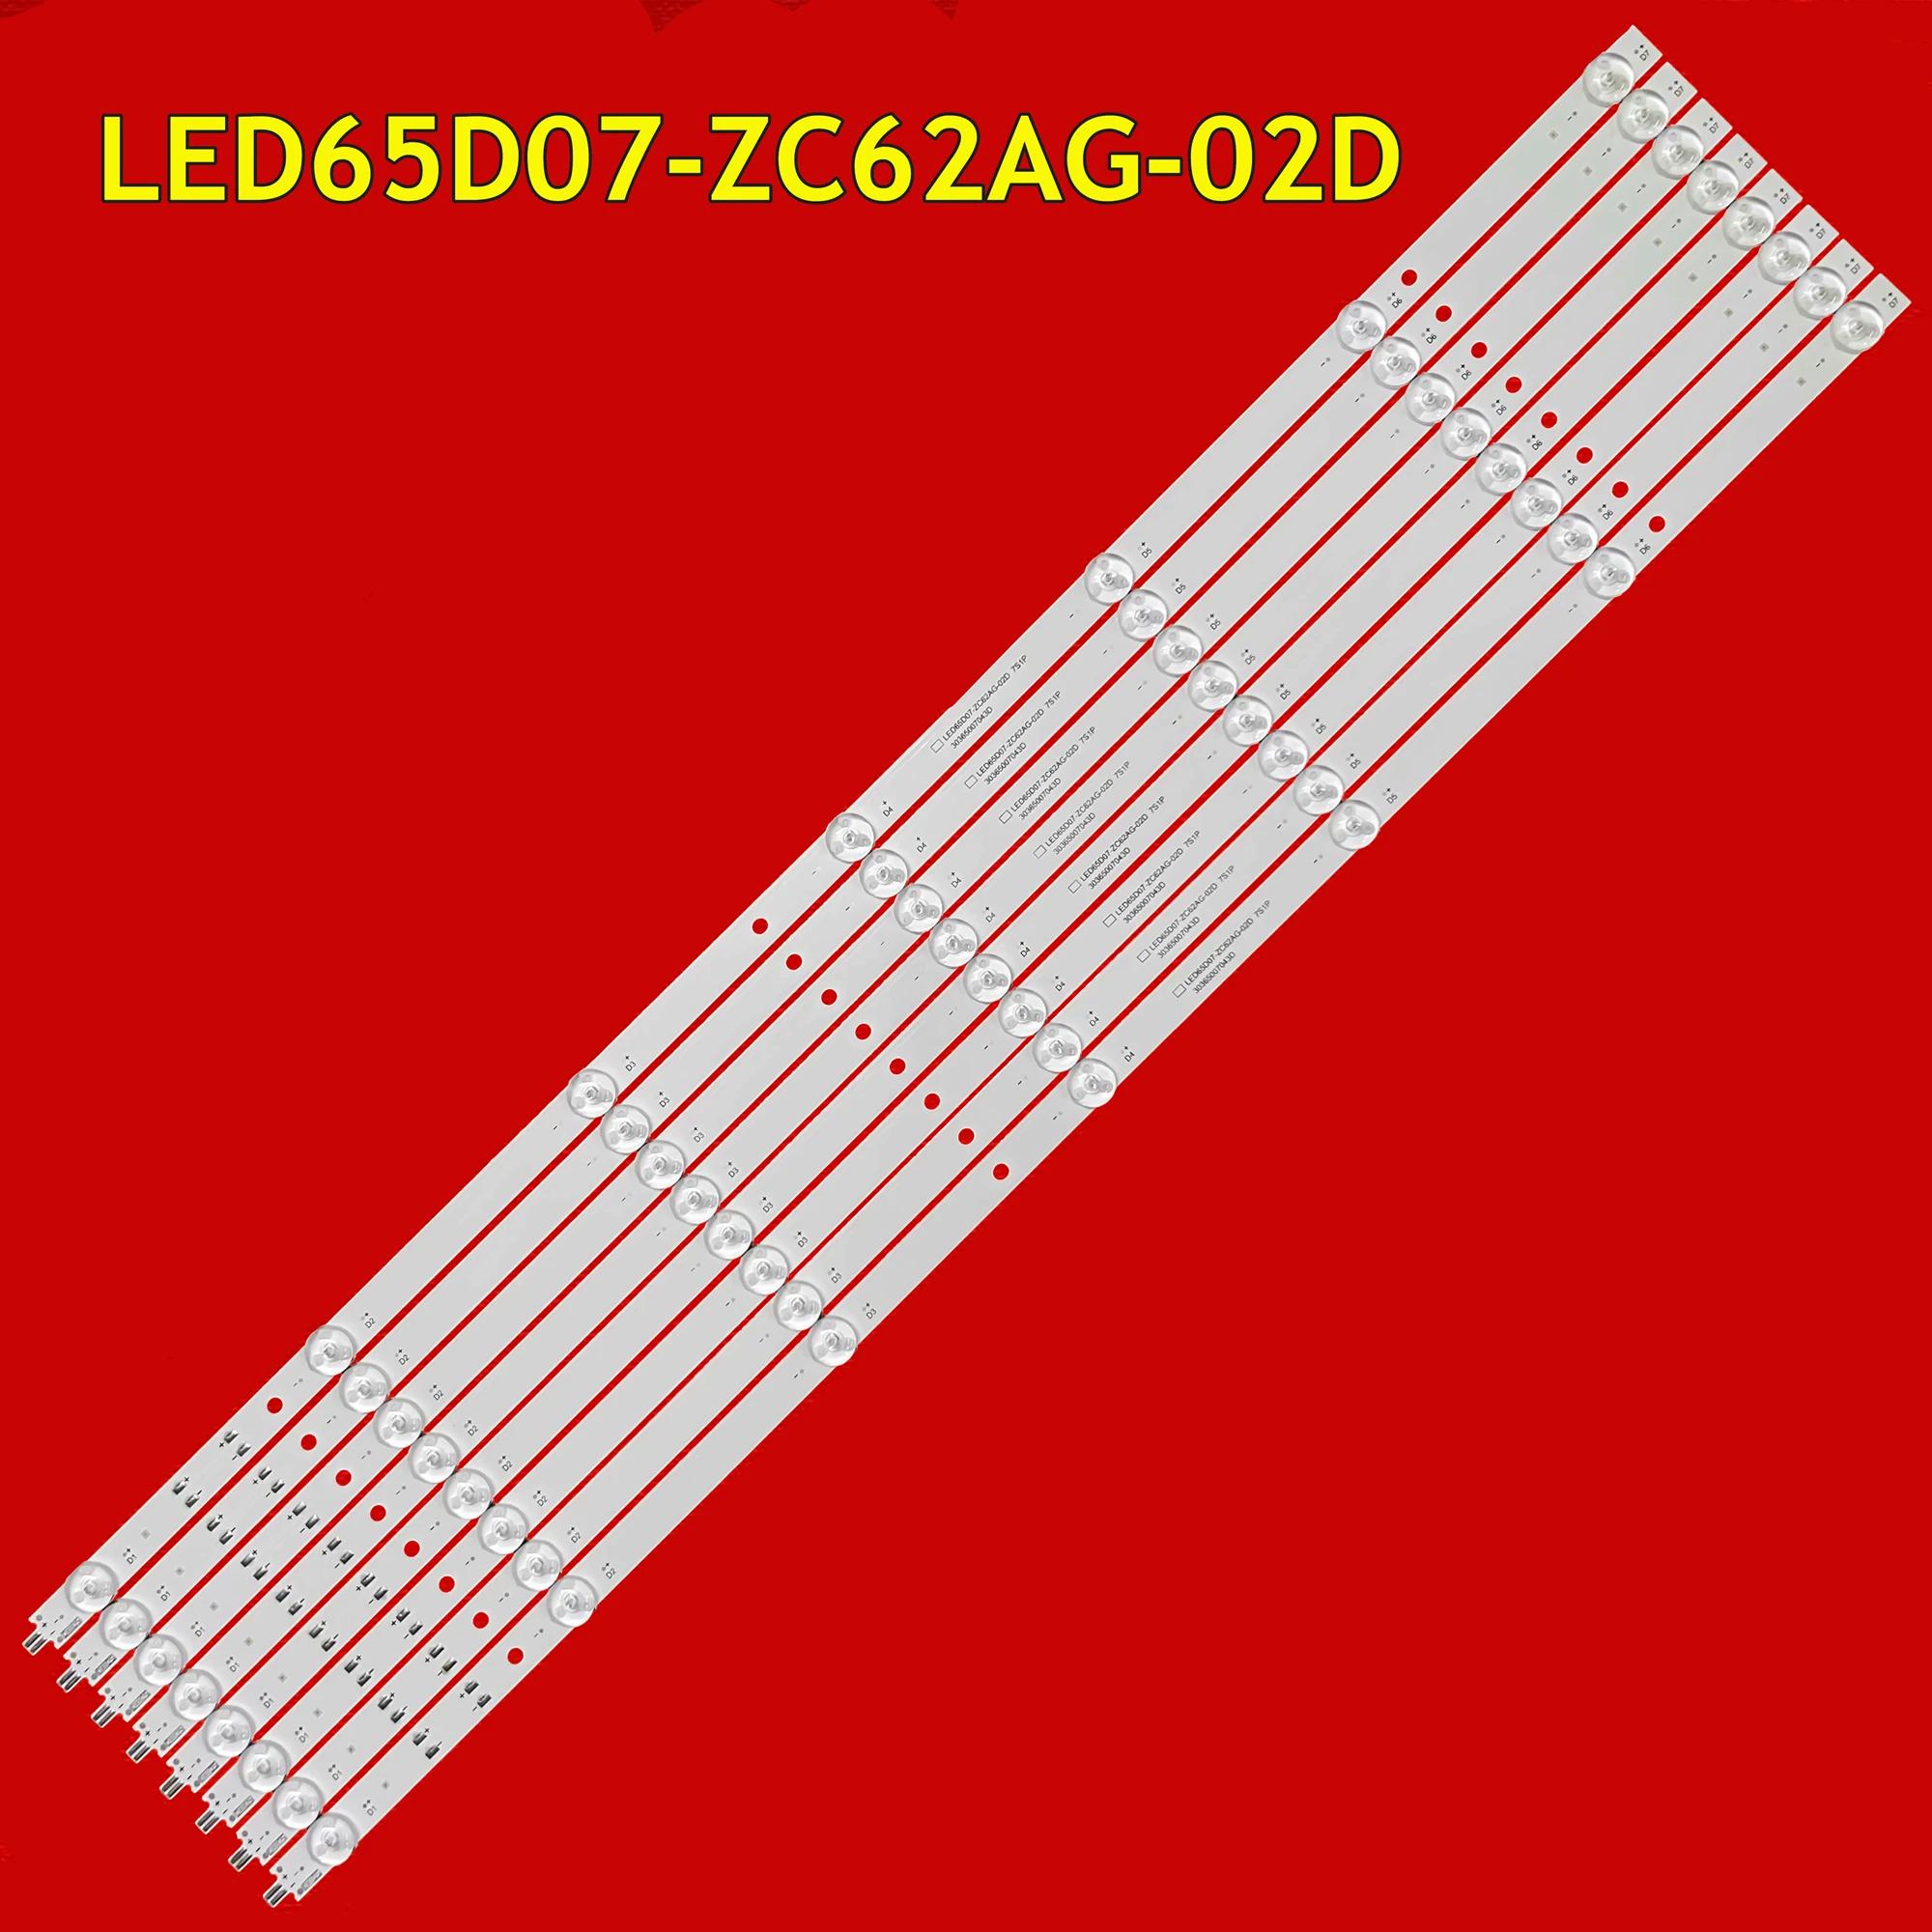 LED TV Ʈ Ʈ, 65R3 LT-65MCS780 LU65C31(PRO) LU65D31(PRO) LS65Z51Z LED65D07-ZC62AG-02D